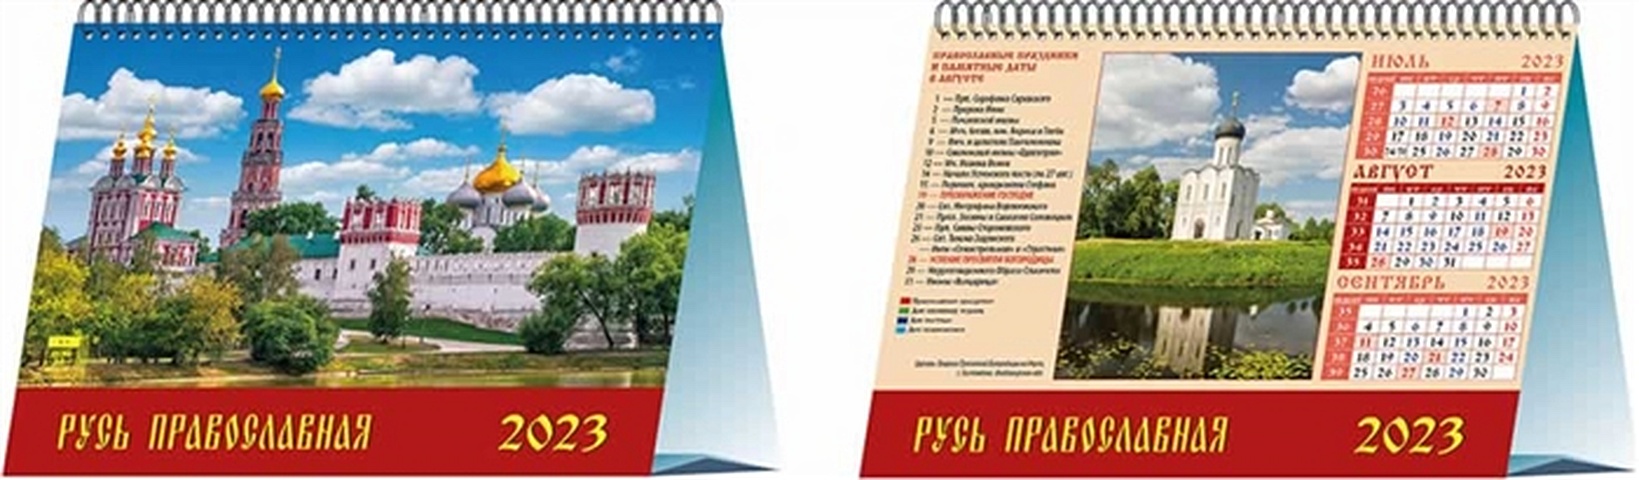 Календарь настольный на 2023 год Русь православна